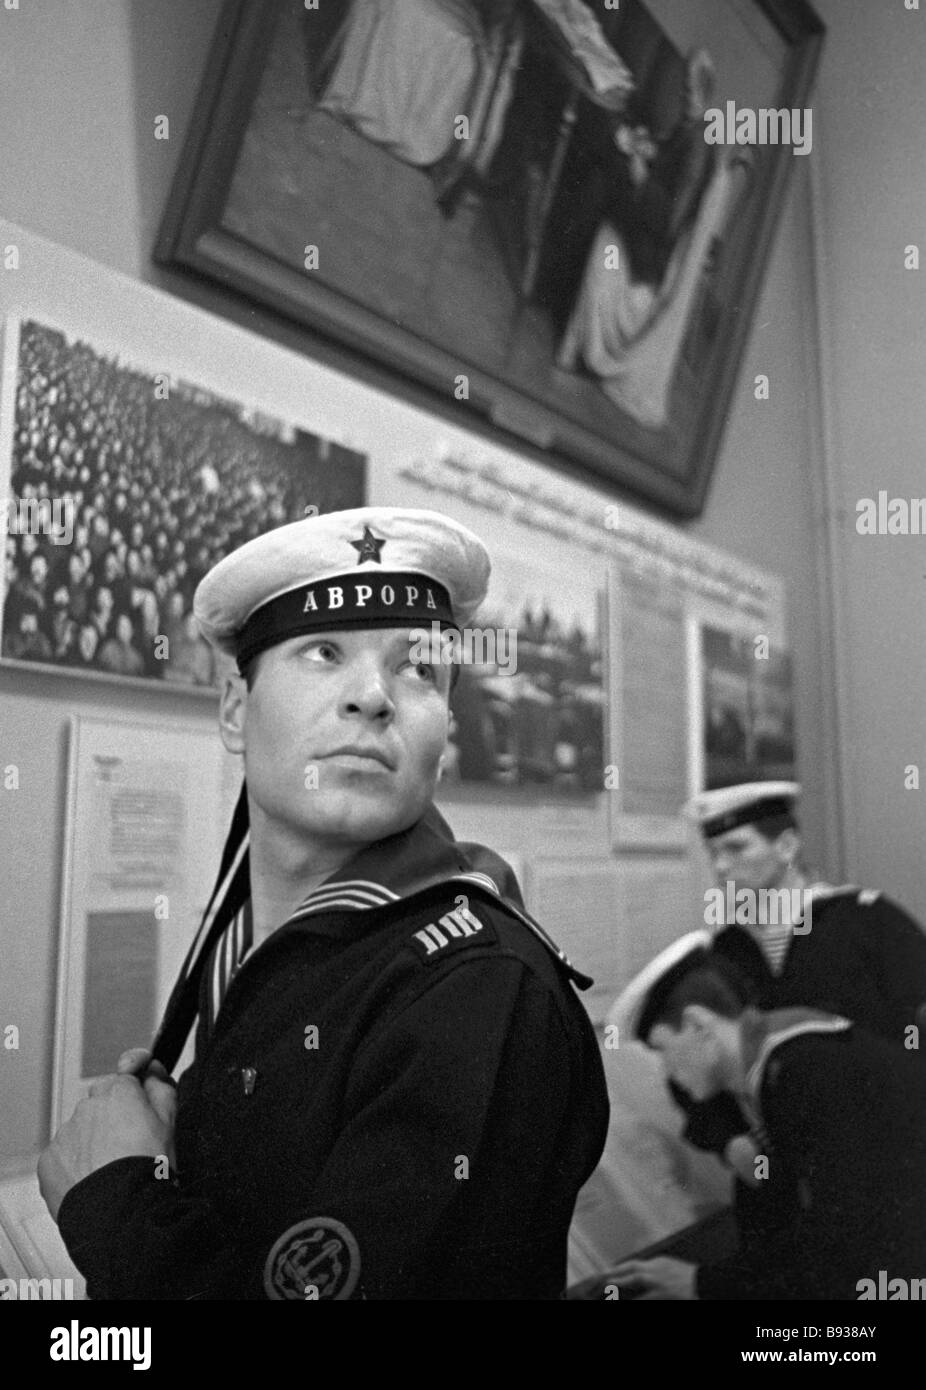 Легендарный моряк. Легендарный матрос Новороссийска. Фото моряка с Авроры.